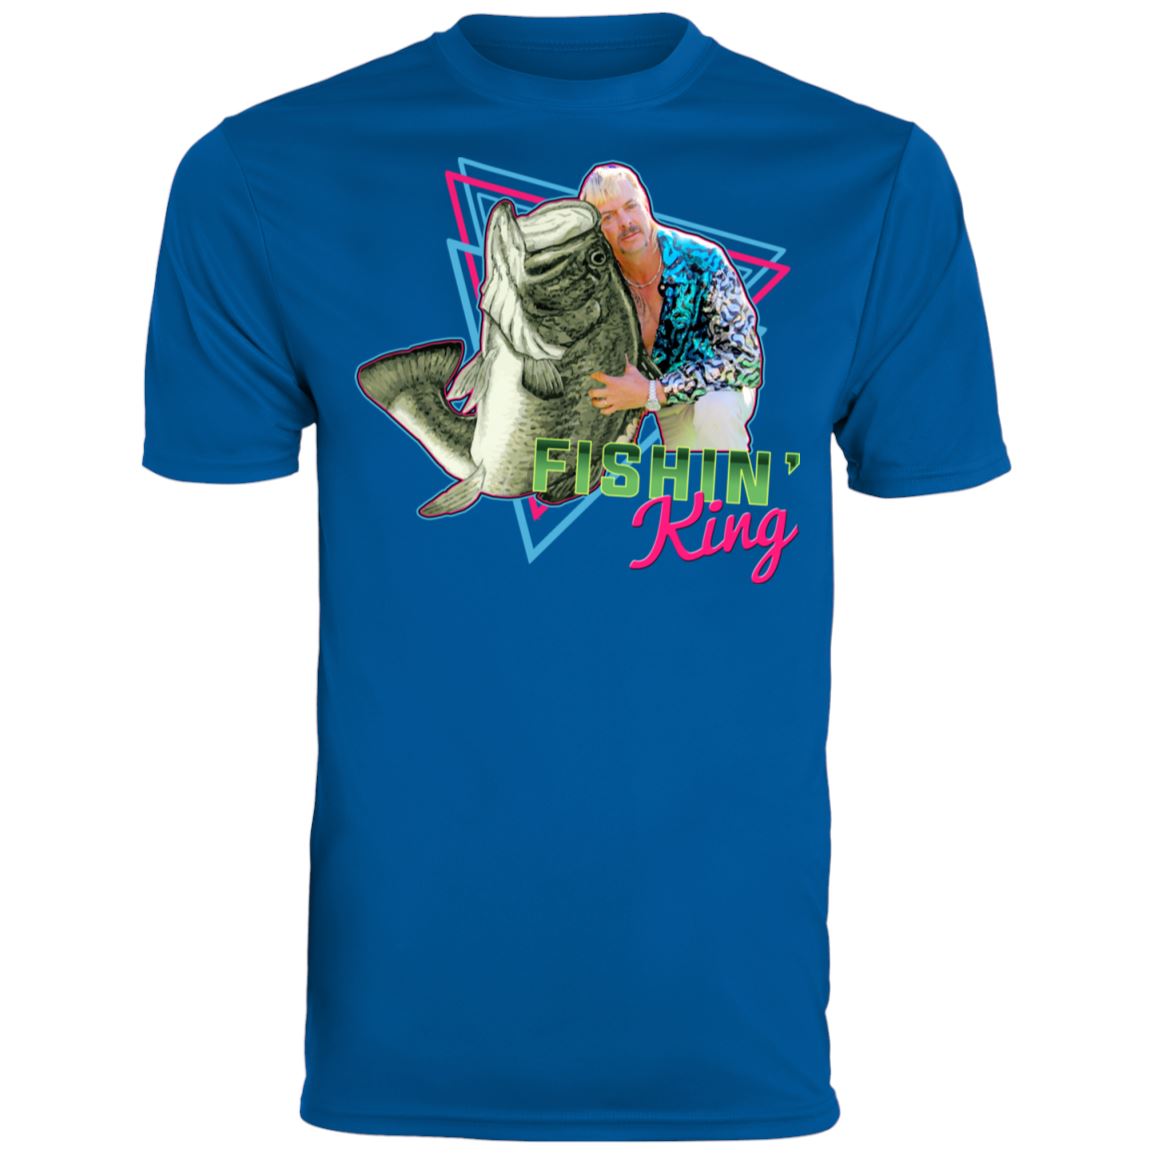 Fishin' King Men's Wicking T-Shirt - Houseboat Kings